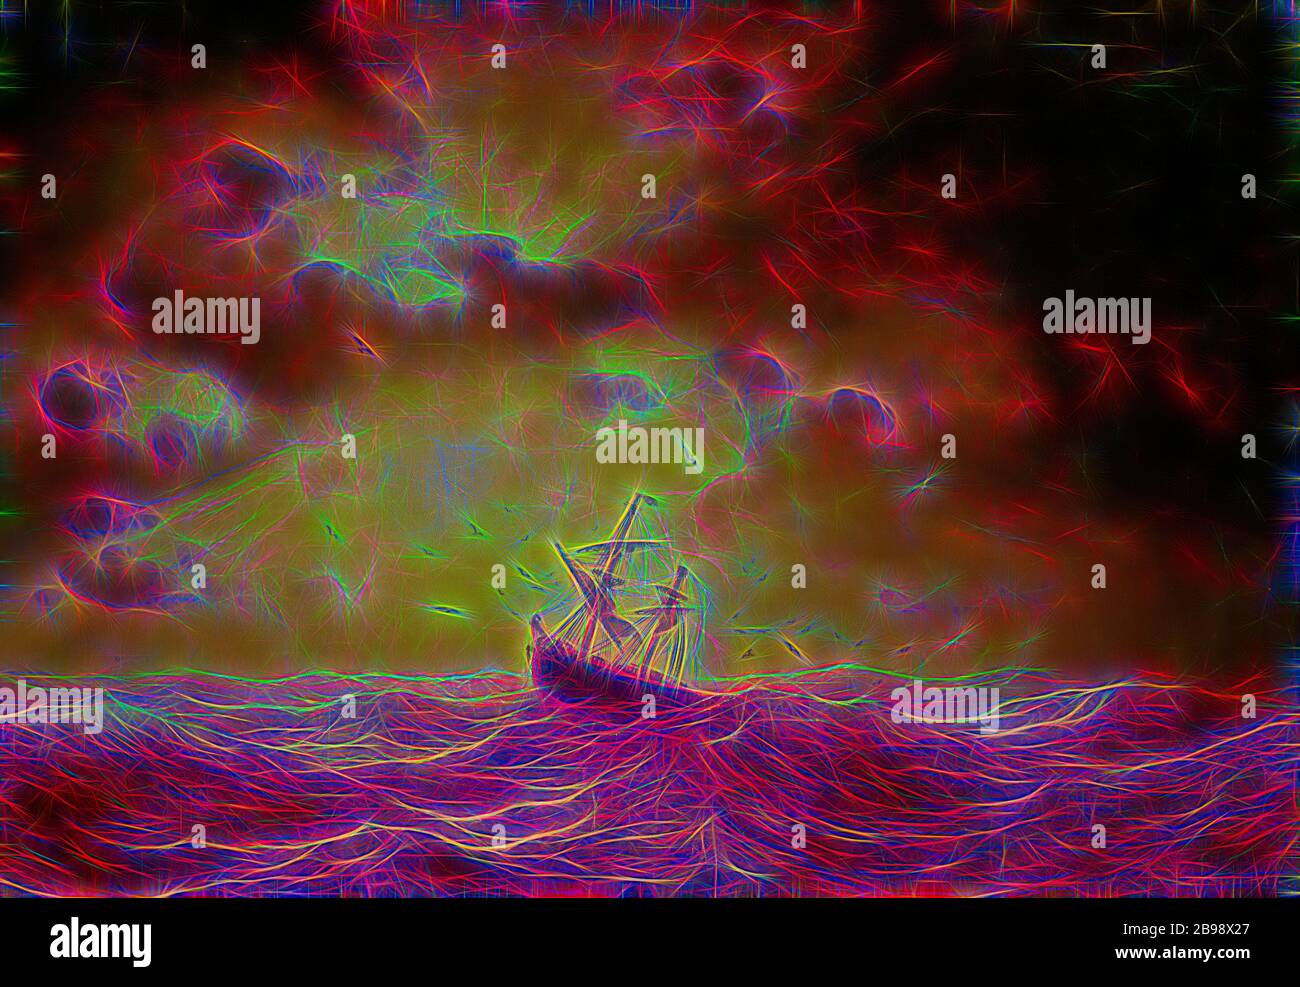 Marcus Larson, Stormy Sea, Storm at Sea, Gemälde, 1857, Öl auf Leinwand, Höhe, 88.5 cm (34.8 Zoll), Breite, 127 cm (50 Zoll), (ML in Monogramm) signiert, MLarson, , 1857., Reimagined von Gibon, Design von warmen fröhlich glühen von Helligkeit und Lichtstrahlen Ausstrahlung. Klassische Kunst neu erfunden mit einem modernen Twist. Fotografie inspiriert von Futurismus, umarmt dynamische Energie der modernen Technologie, Bewegung, Geschwindigkeit und Kultur revolutionieren. Stockfoto